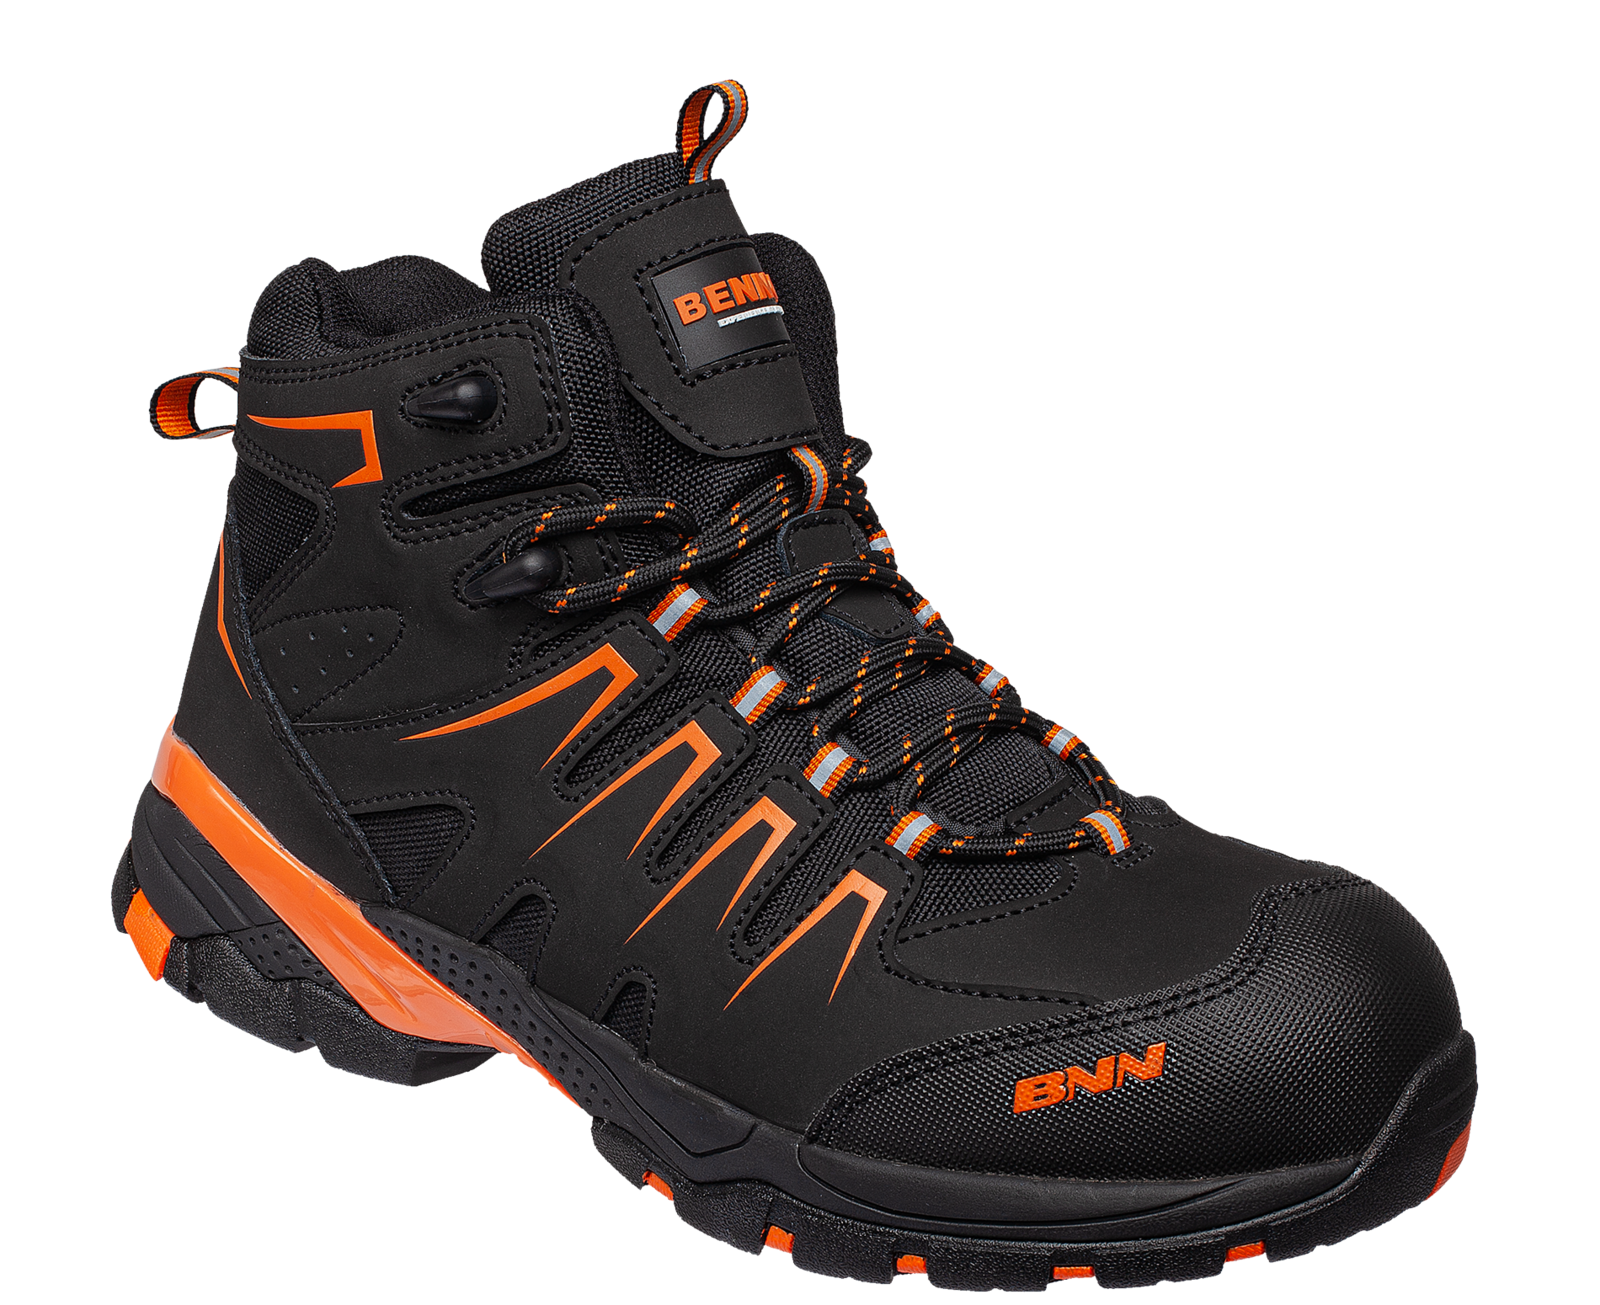 Bezpečnostná členková obuv Bennon Orlando XTR S3 NM High - veľkosť: 47, farba: čierna/oranžová